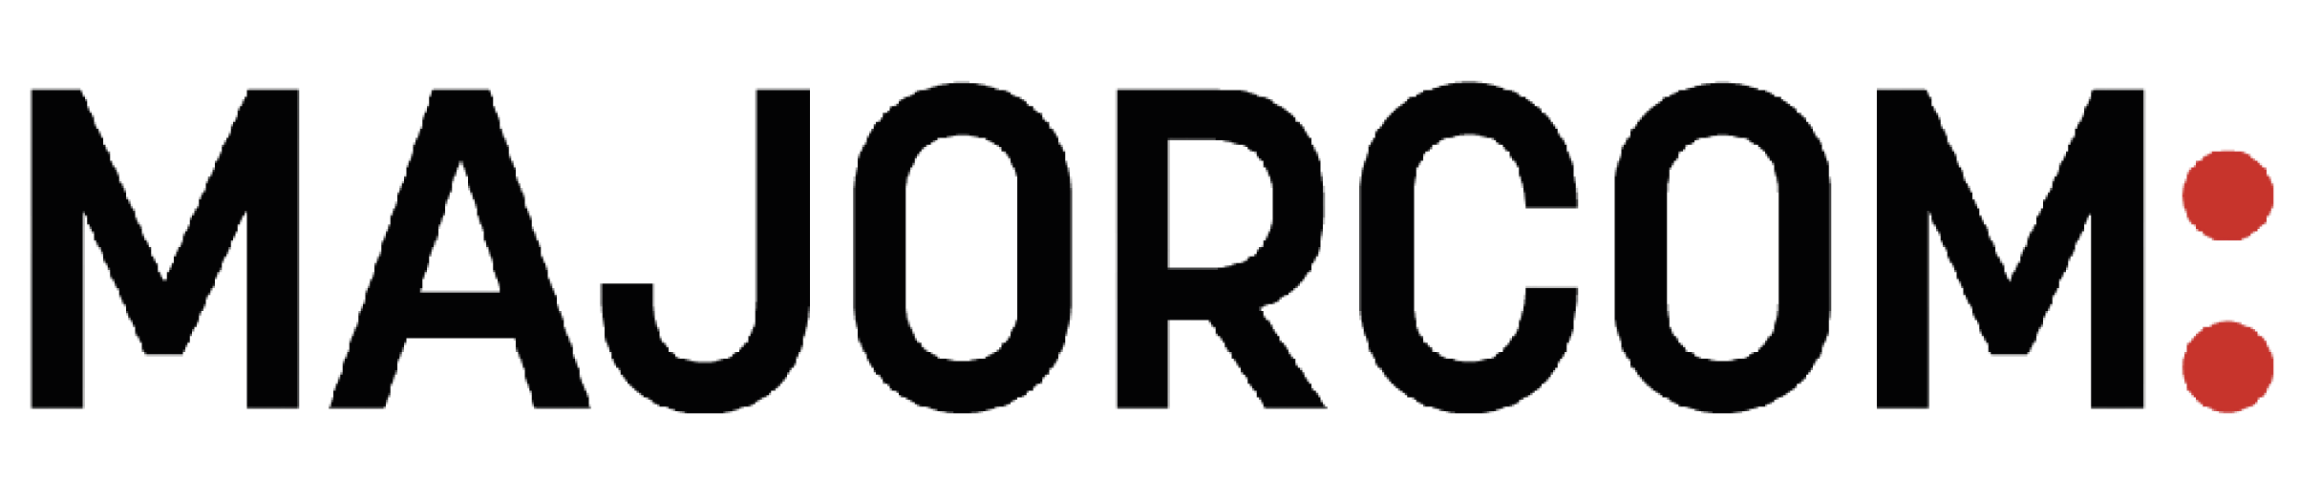 logo majorcom